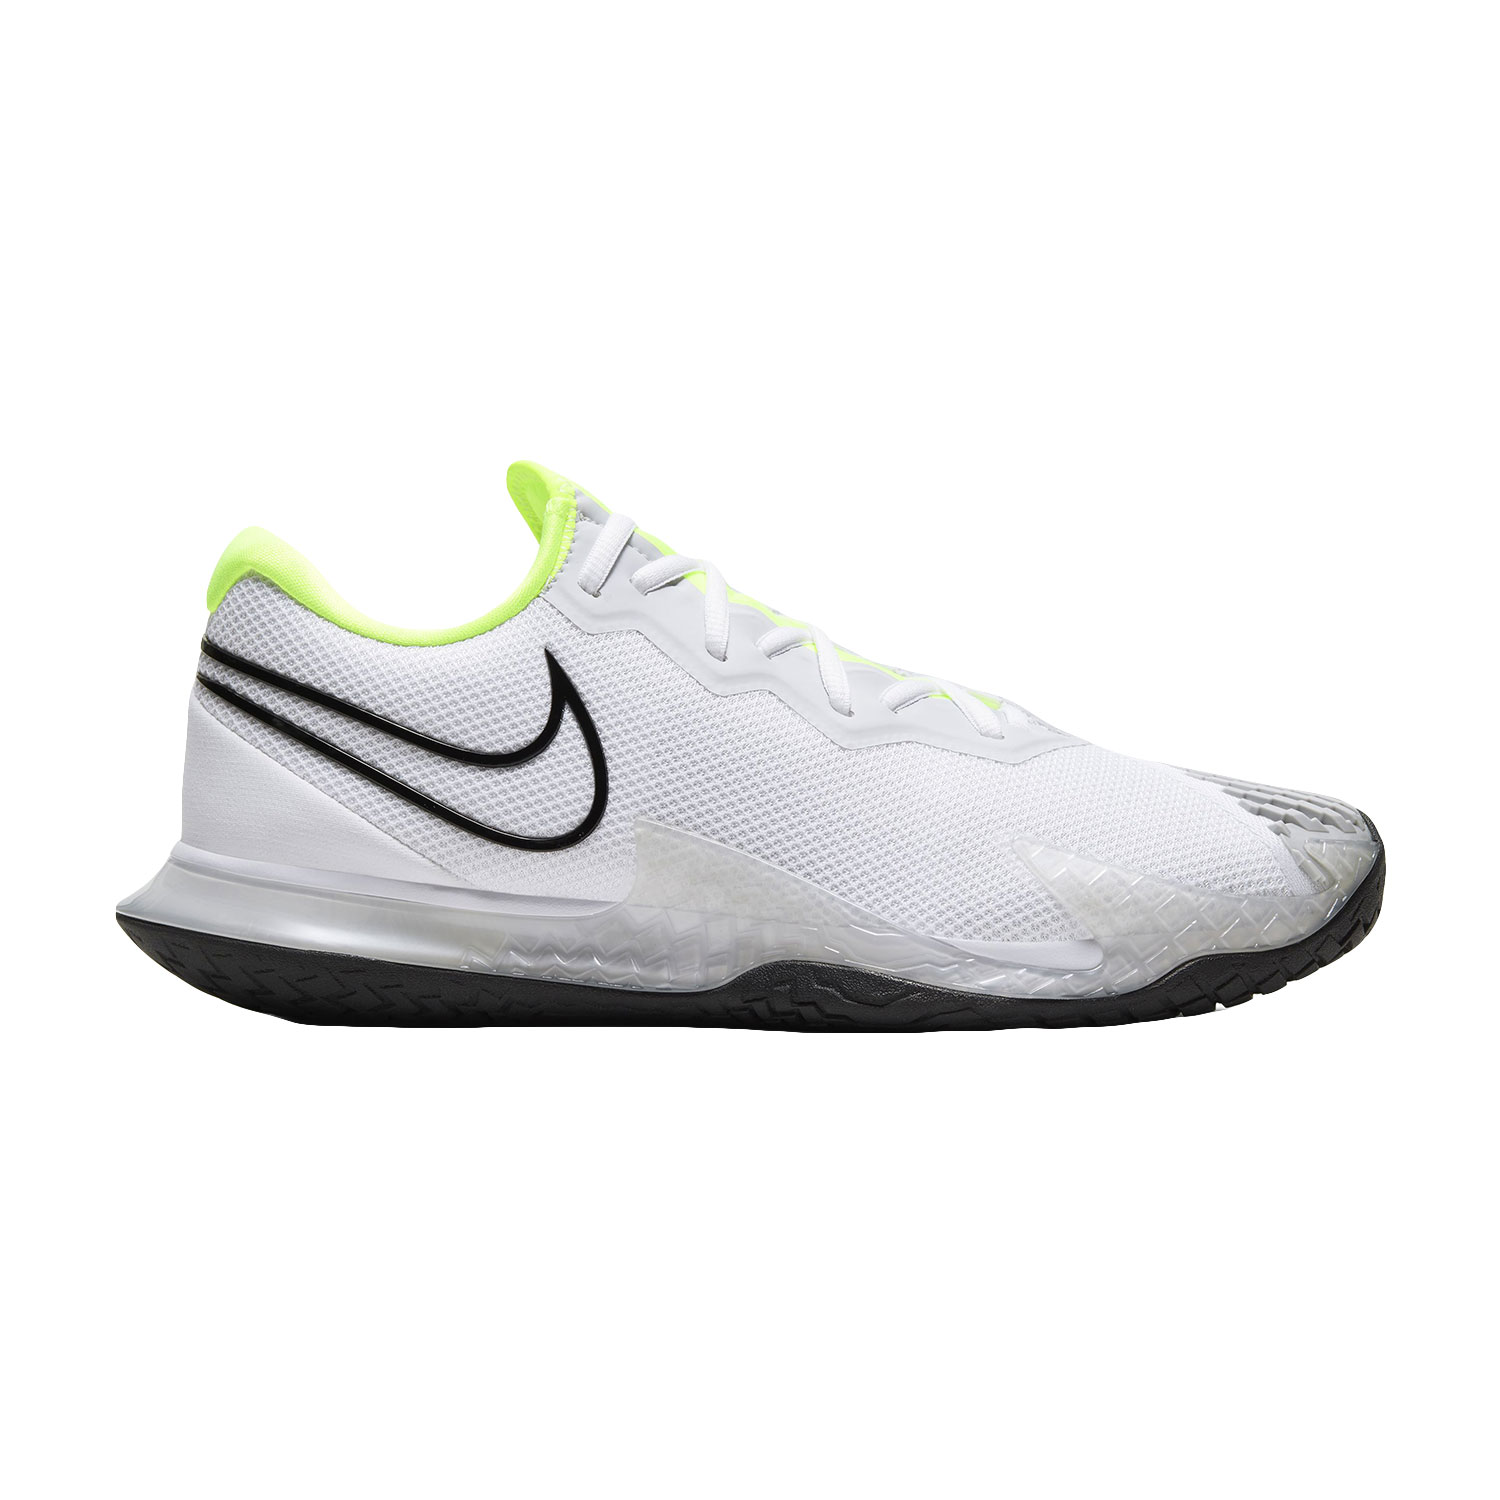 Nike Zoom Vapor Cage 4 Men's Tennis Shoes White/Black/Volt